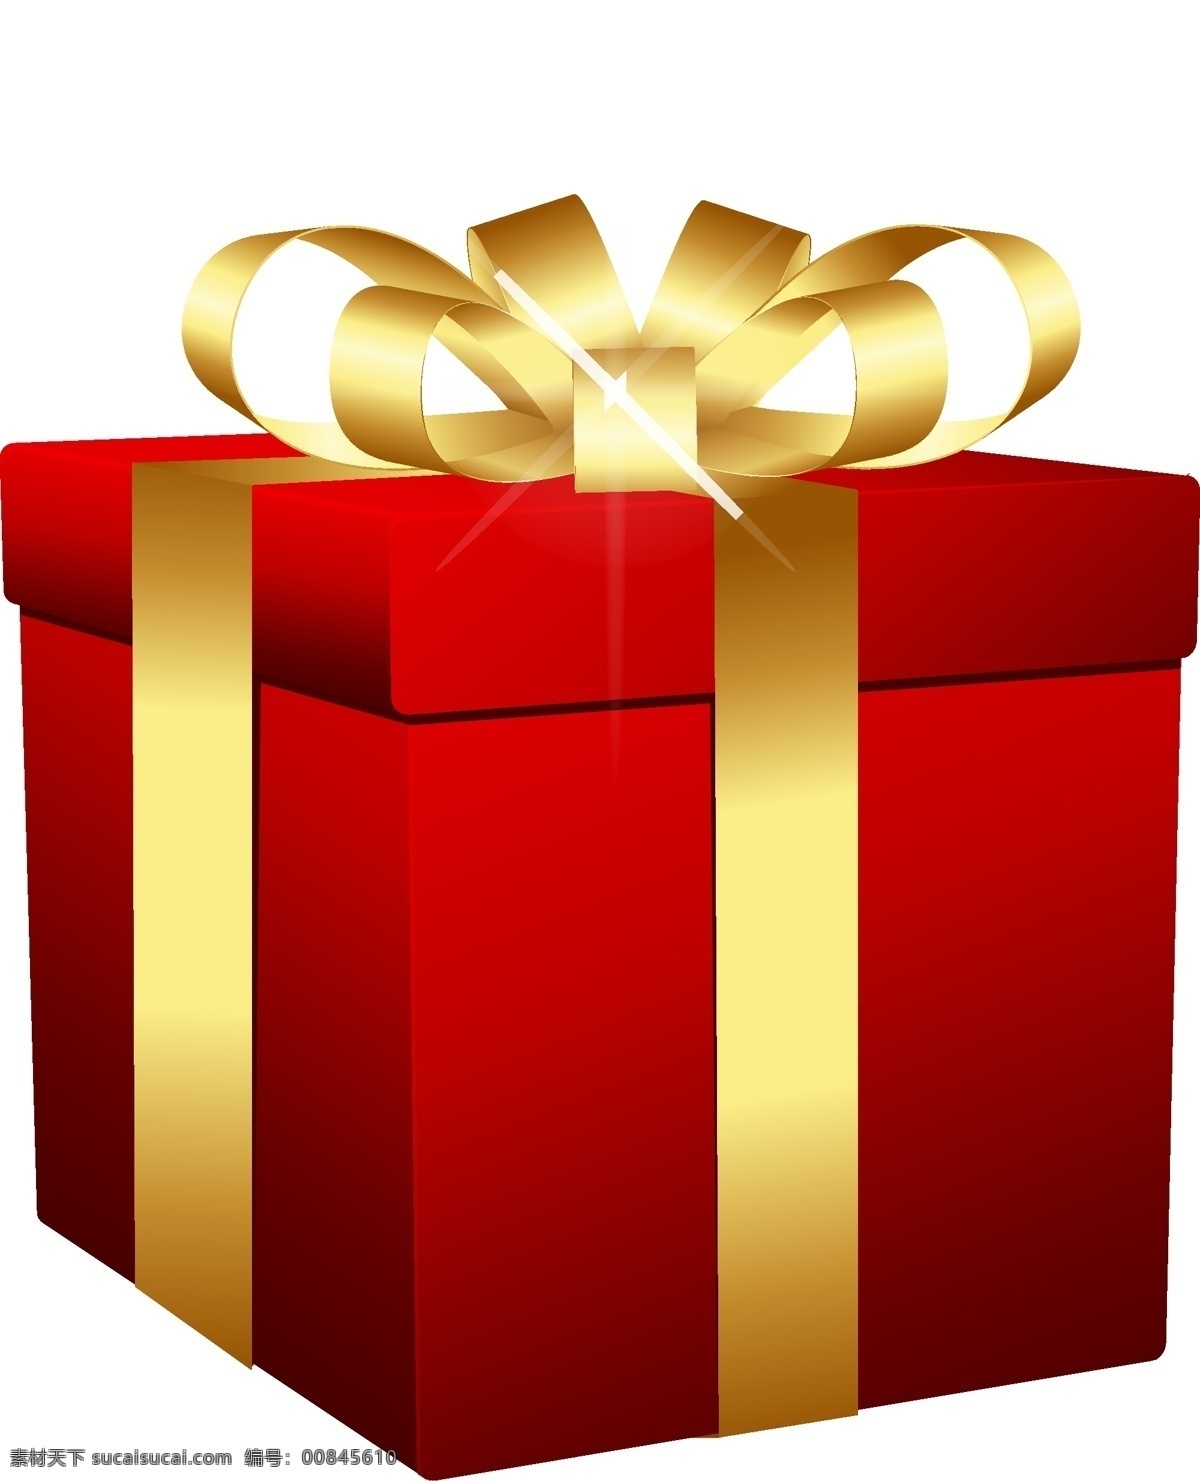 礼品盒 礼物 盒 礼盒 彩色礼盒 红色礼盒 盒子 礼品 箱子 过年礼盒 小元素